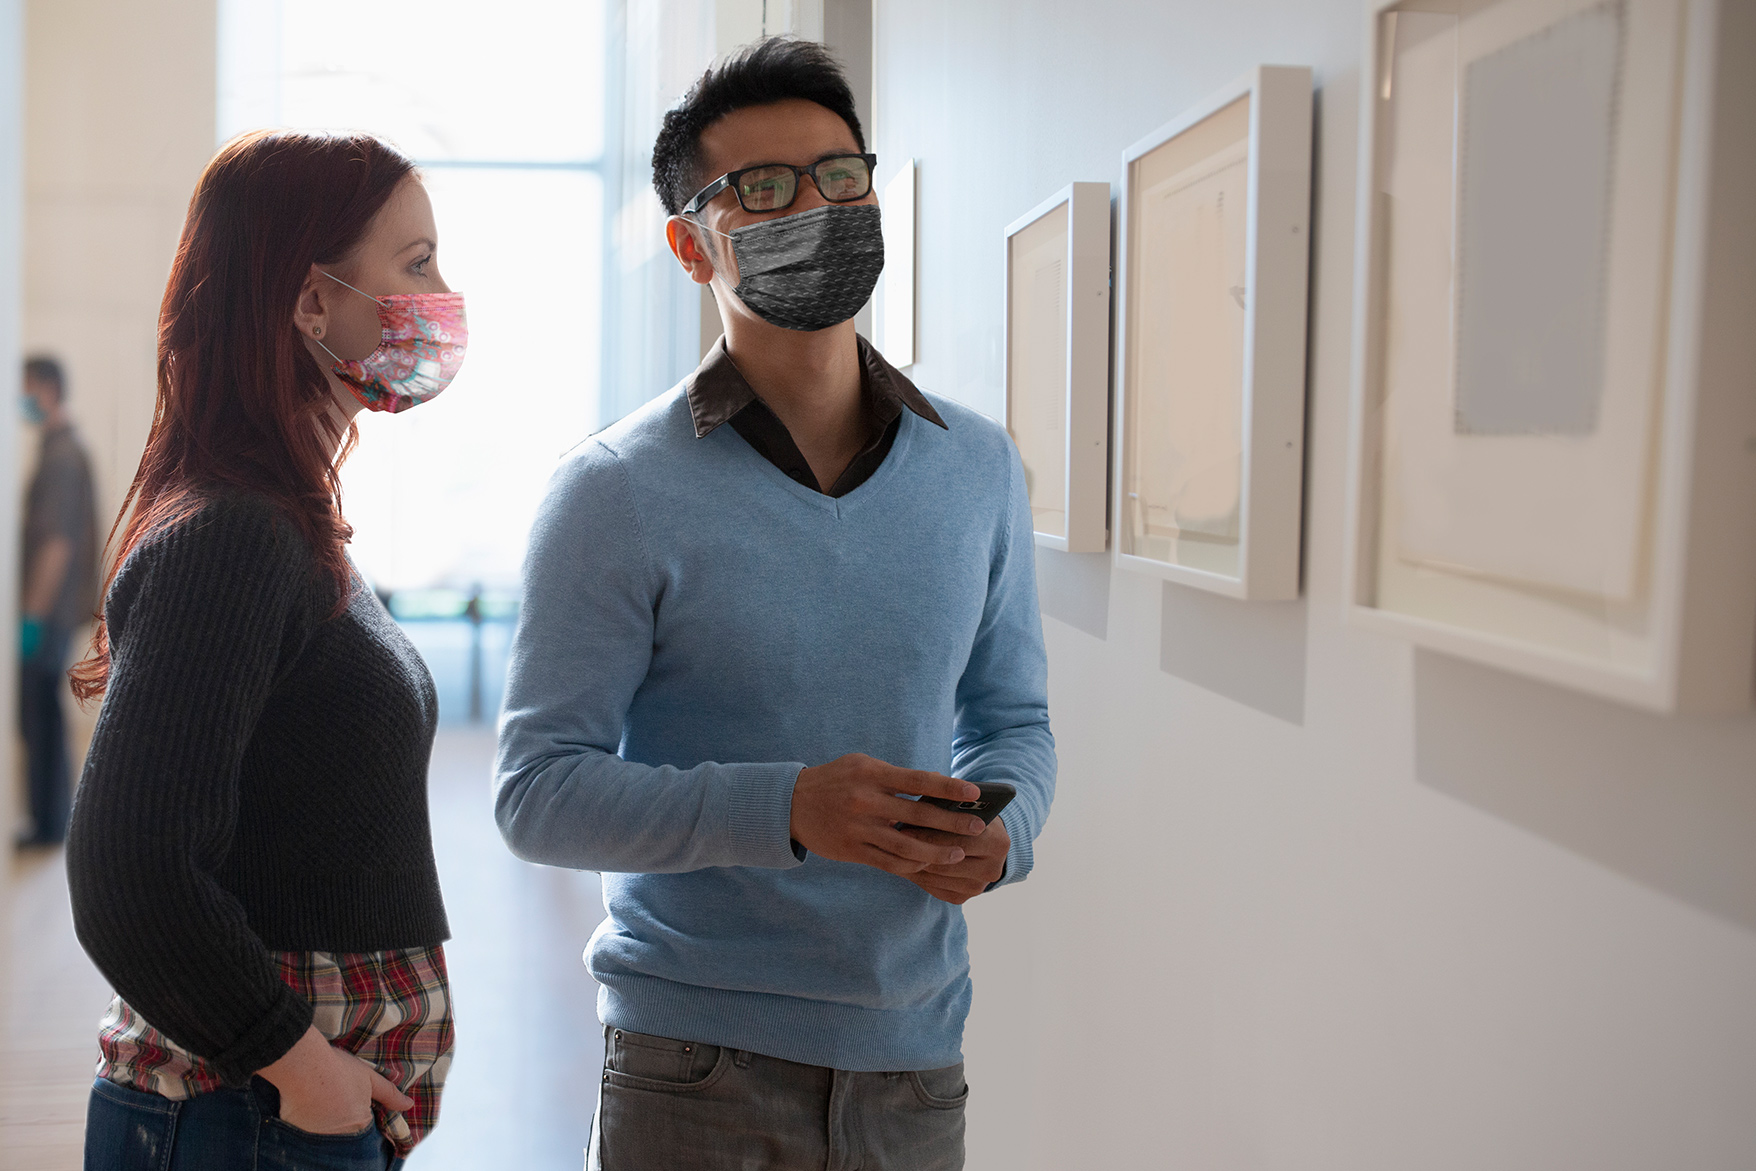  bezoekers musea mondmasker